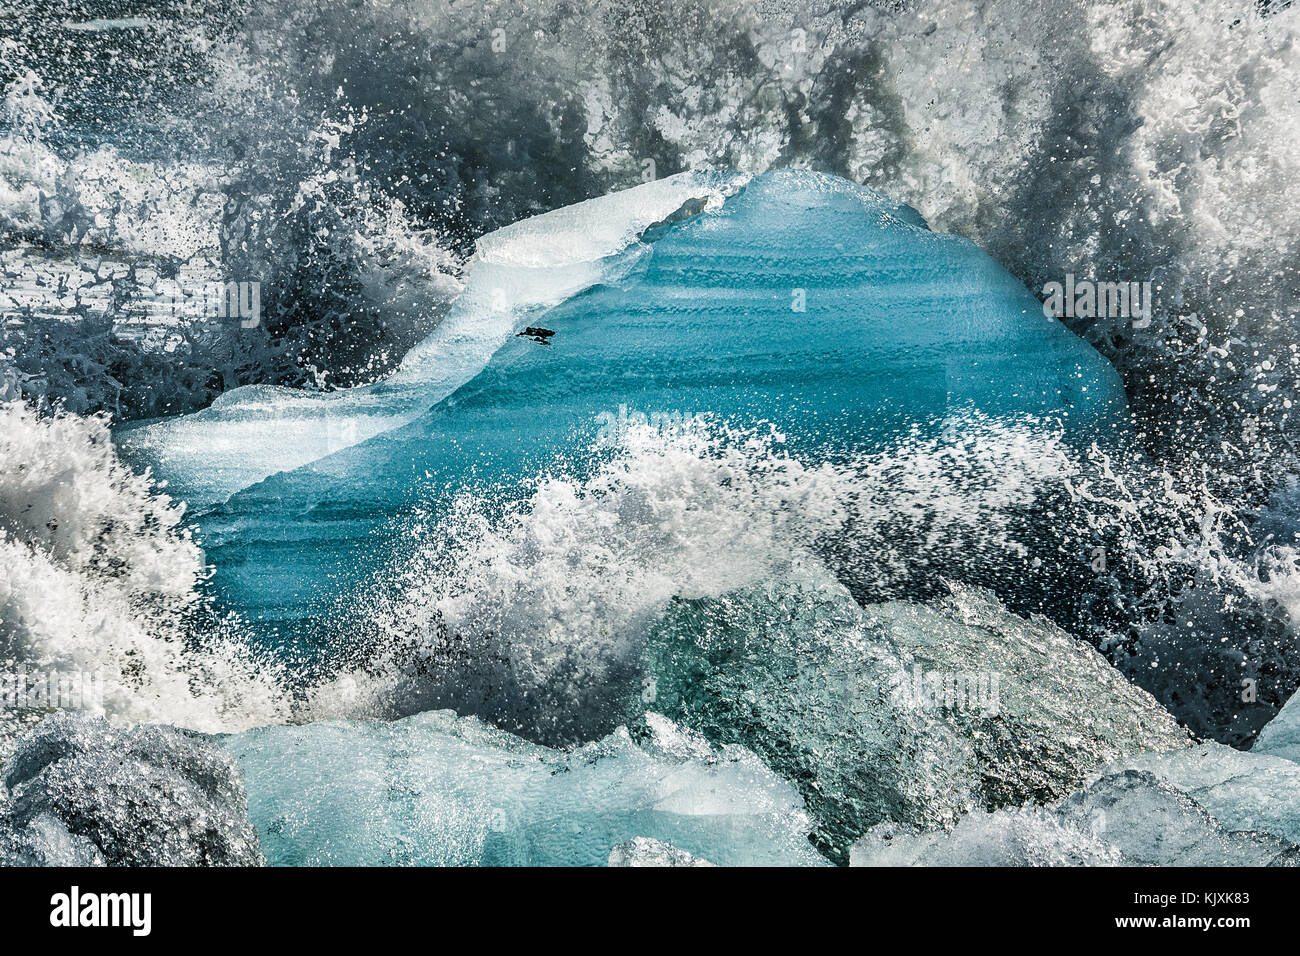 Les vagues crash et créer des gerbes de mousse sur les blocs de glace rejetée sur la plage près de l'Islande, Jokulsarlon Banque D'Images